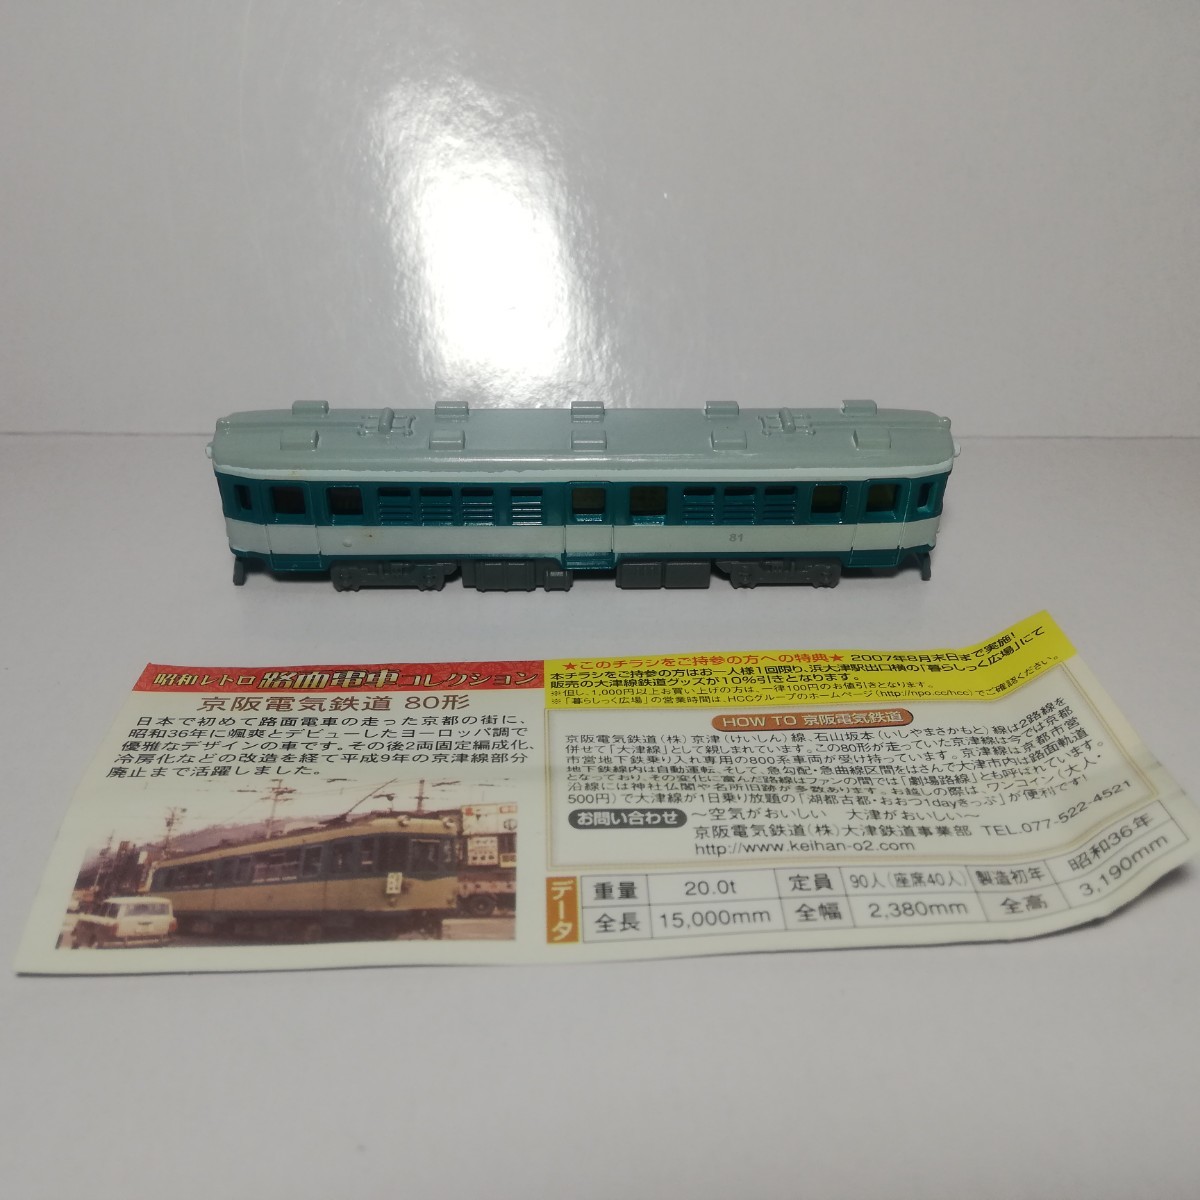 昭和レトロ 路面電車コレクション 京阪電気鉄道 80形